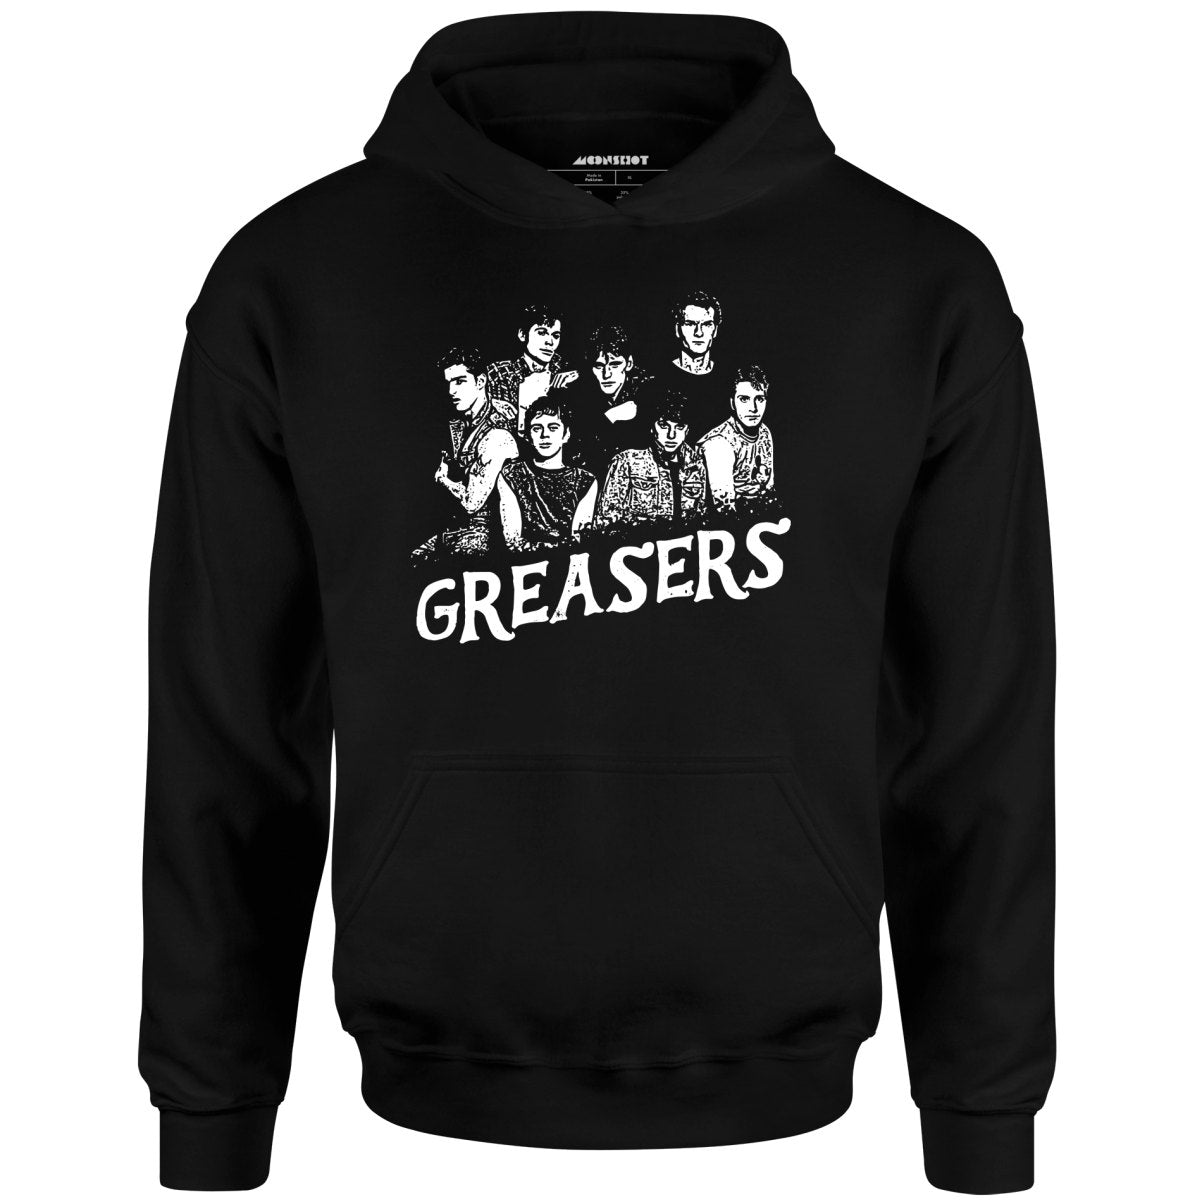 Greasers - Unisex Hoodie